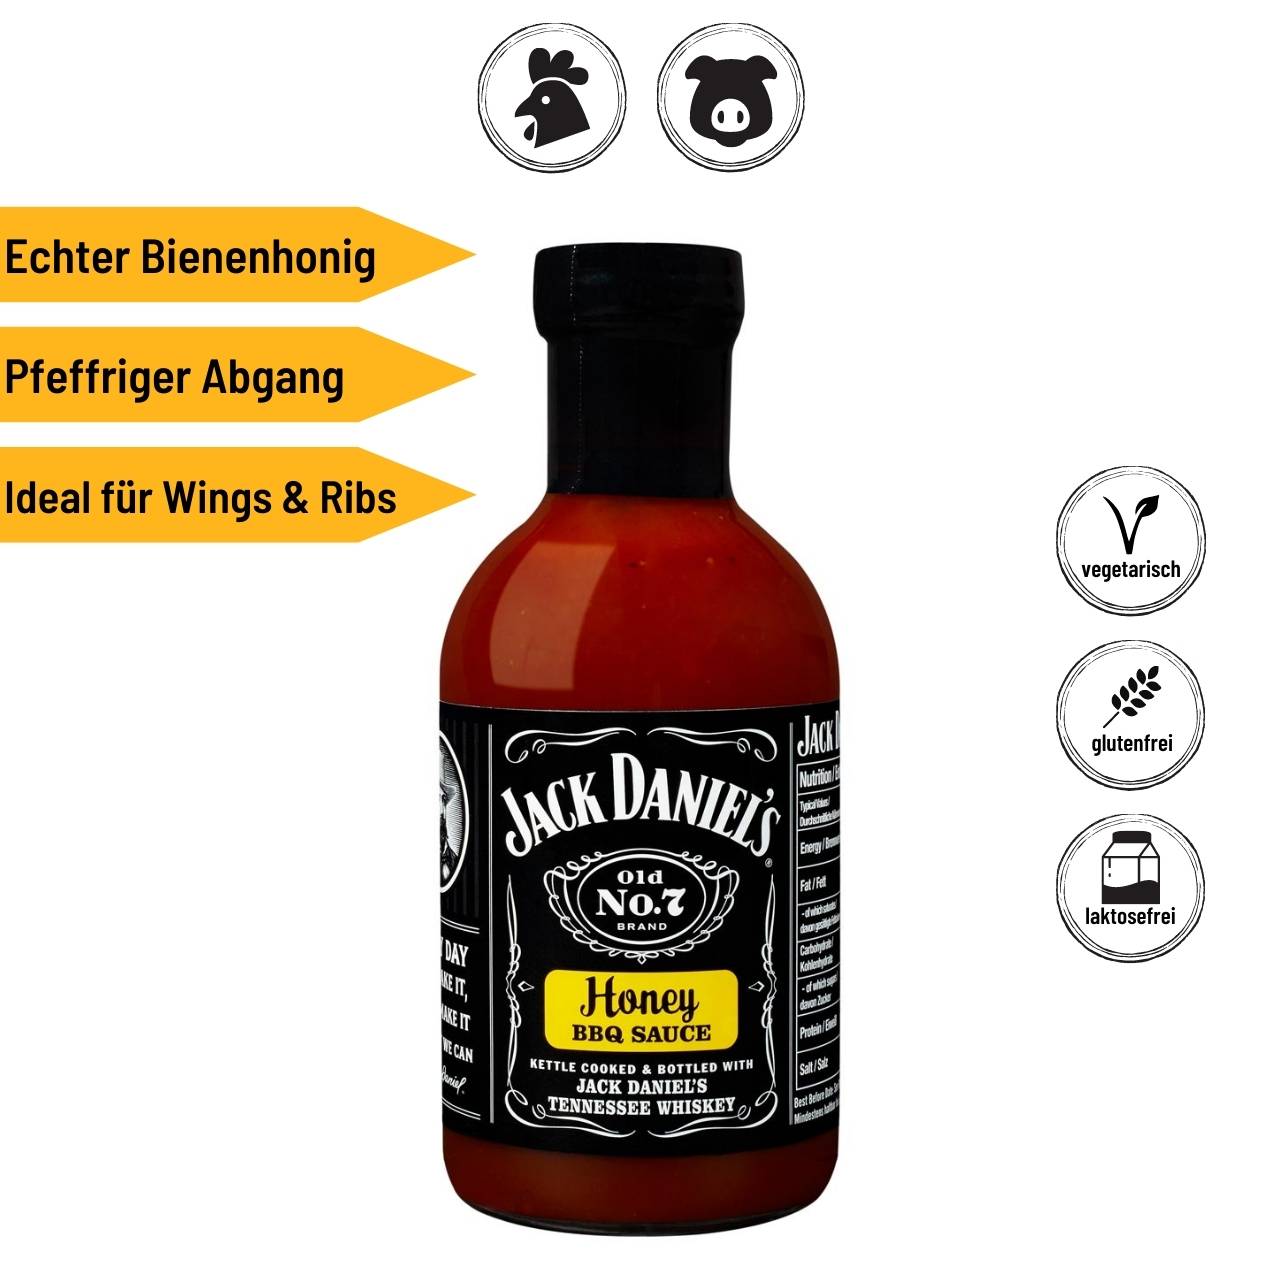 Jack Daniel's Premium Set